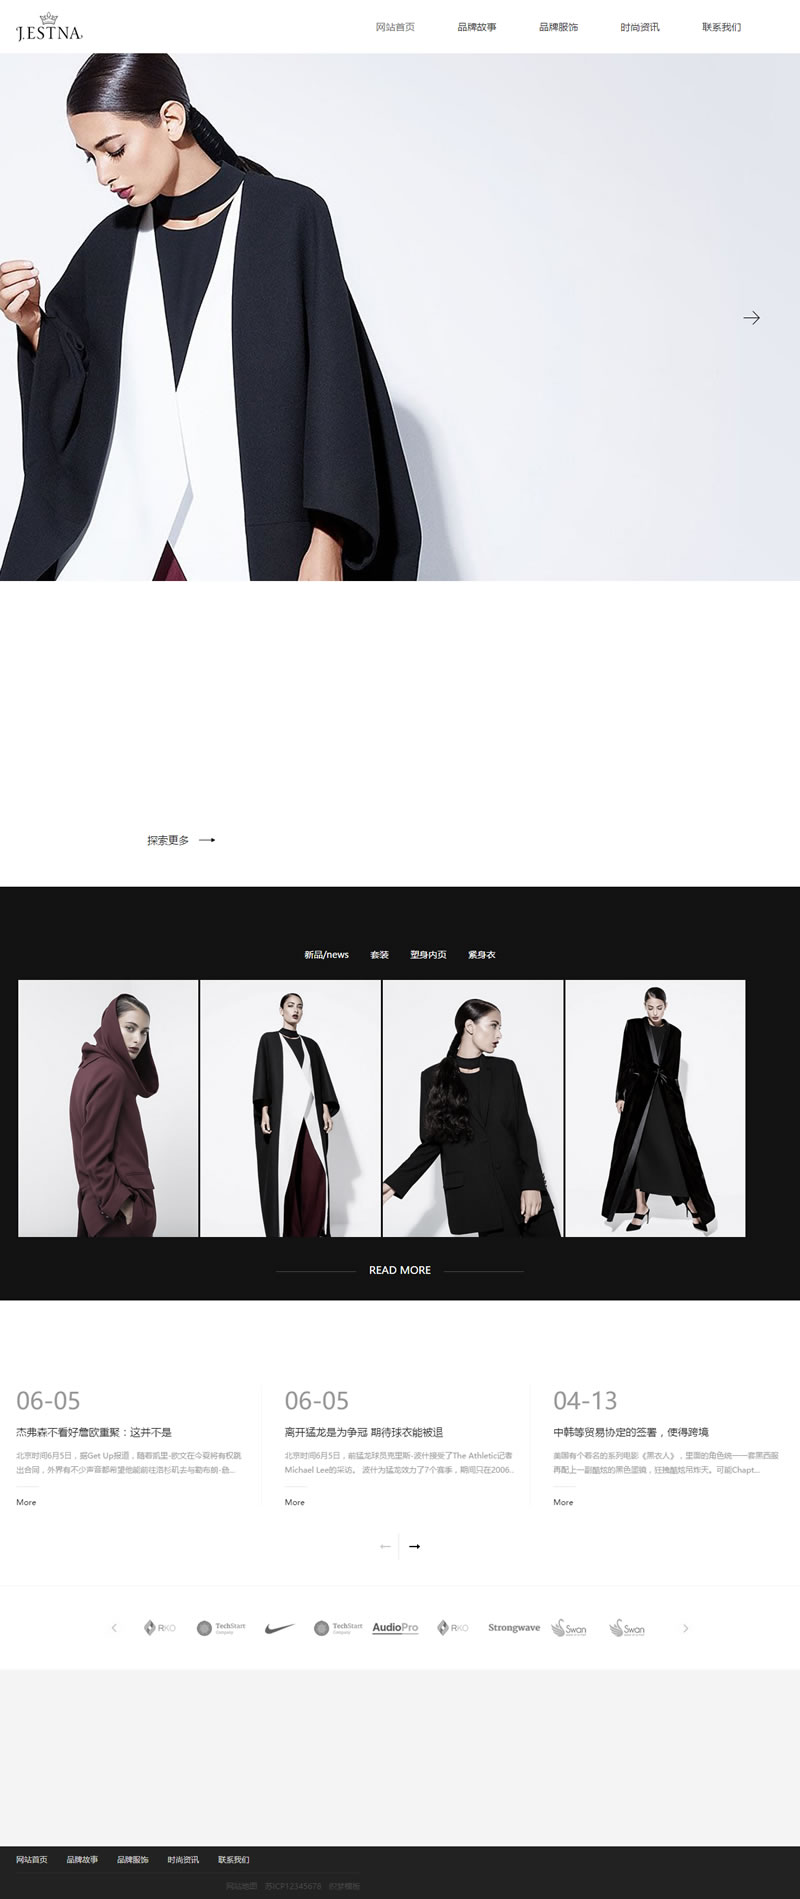 织梦CMS 自适应服装时装设计类网站梦模板